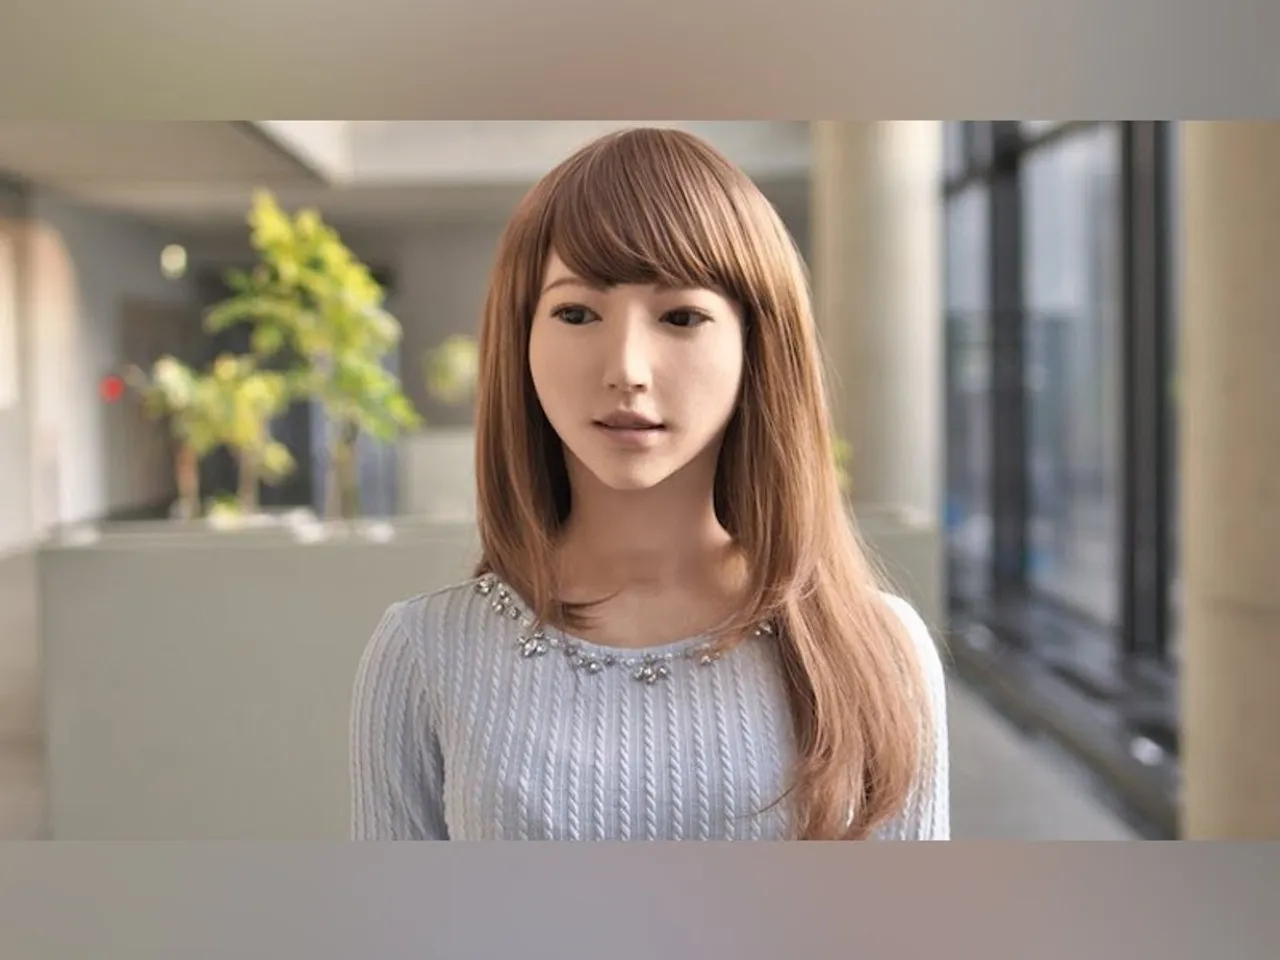 रोबोट एरिका 530 करोड़ की हॉलीवुड फिल्म में निभाएगी मुख्य भूमिका